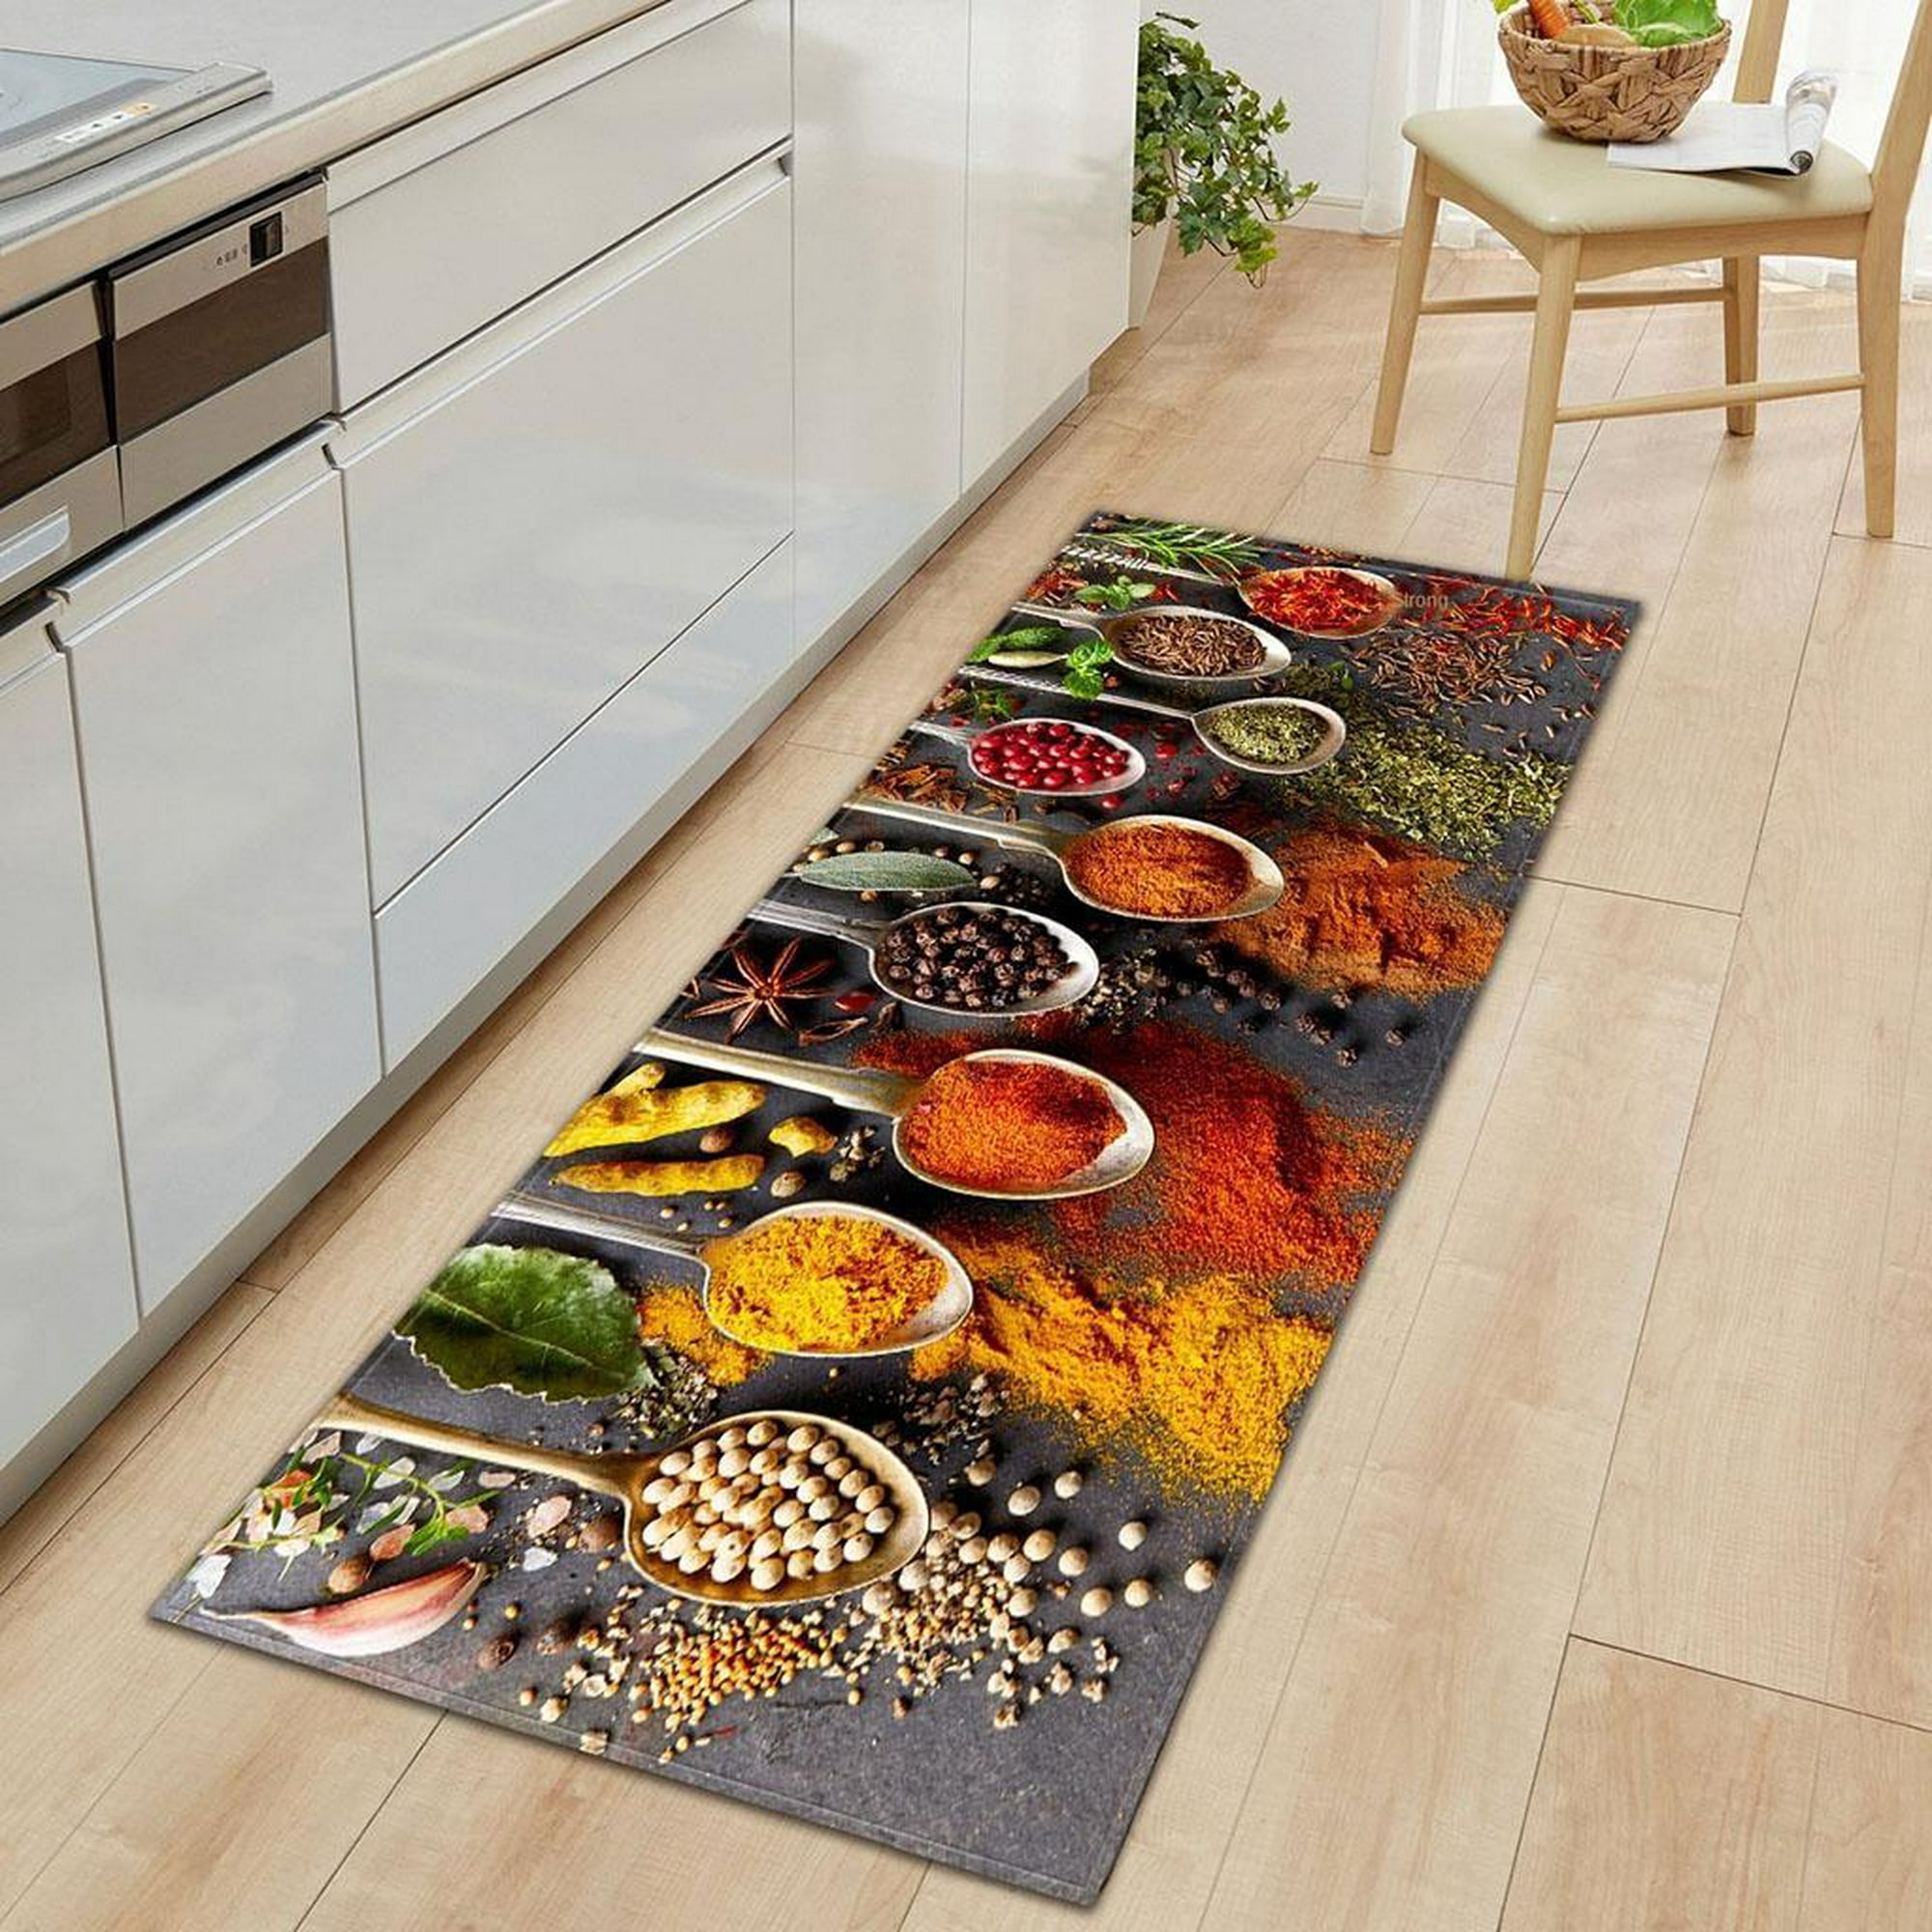 Alfombras para suelo de cocina, juego de alfombras abstractas  antideslizantes para cocina, comedor, hogar, oficina, fregadero,  lavandería, 16 x 24